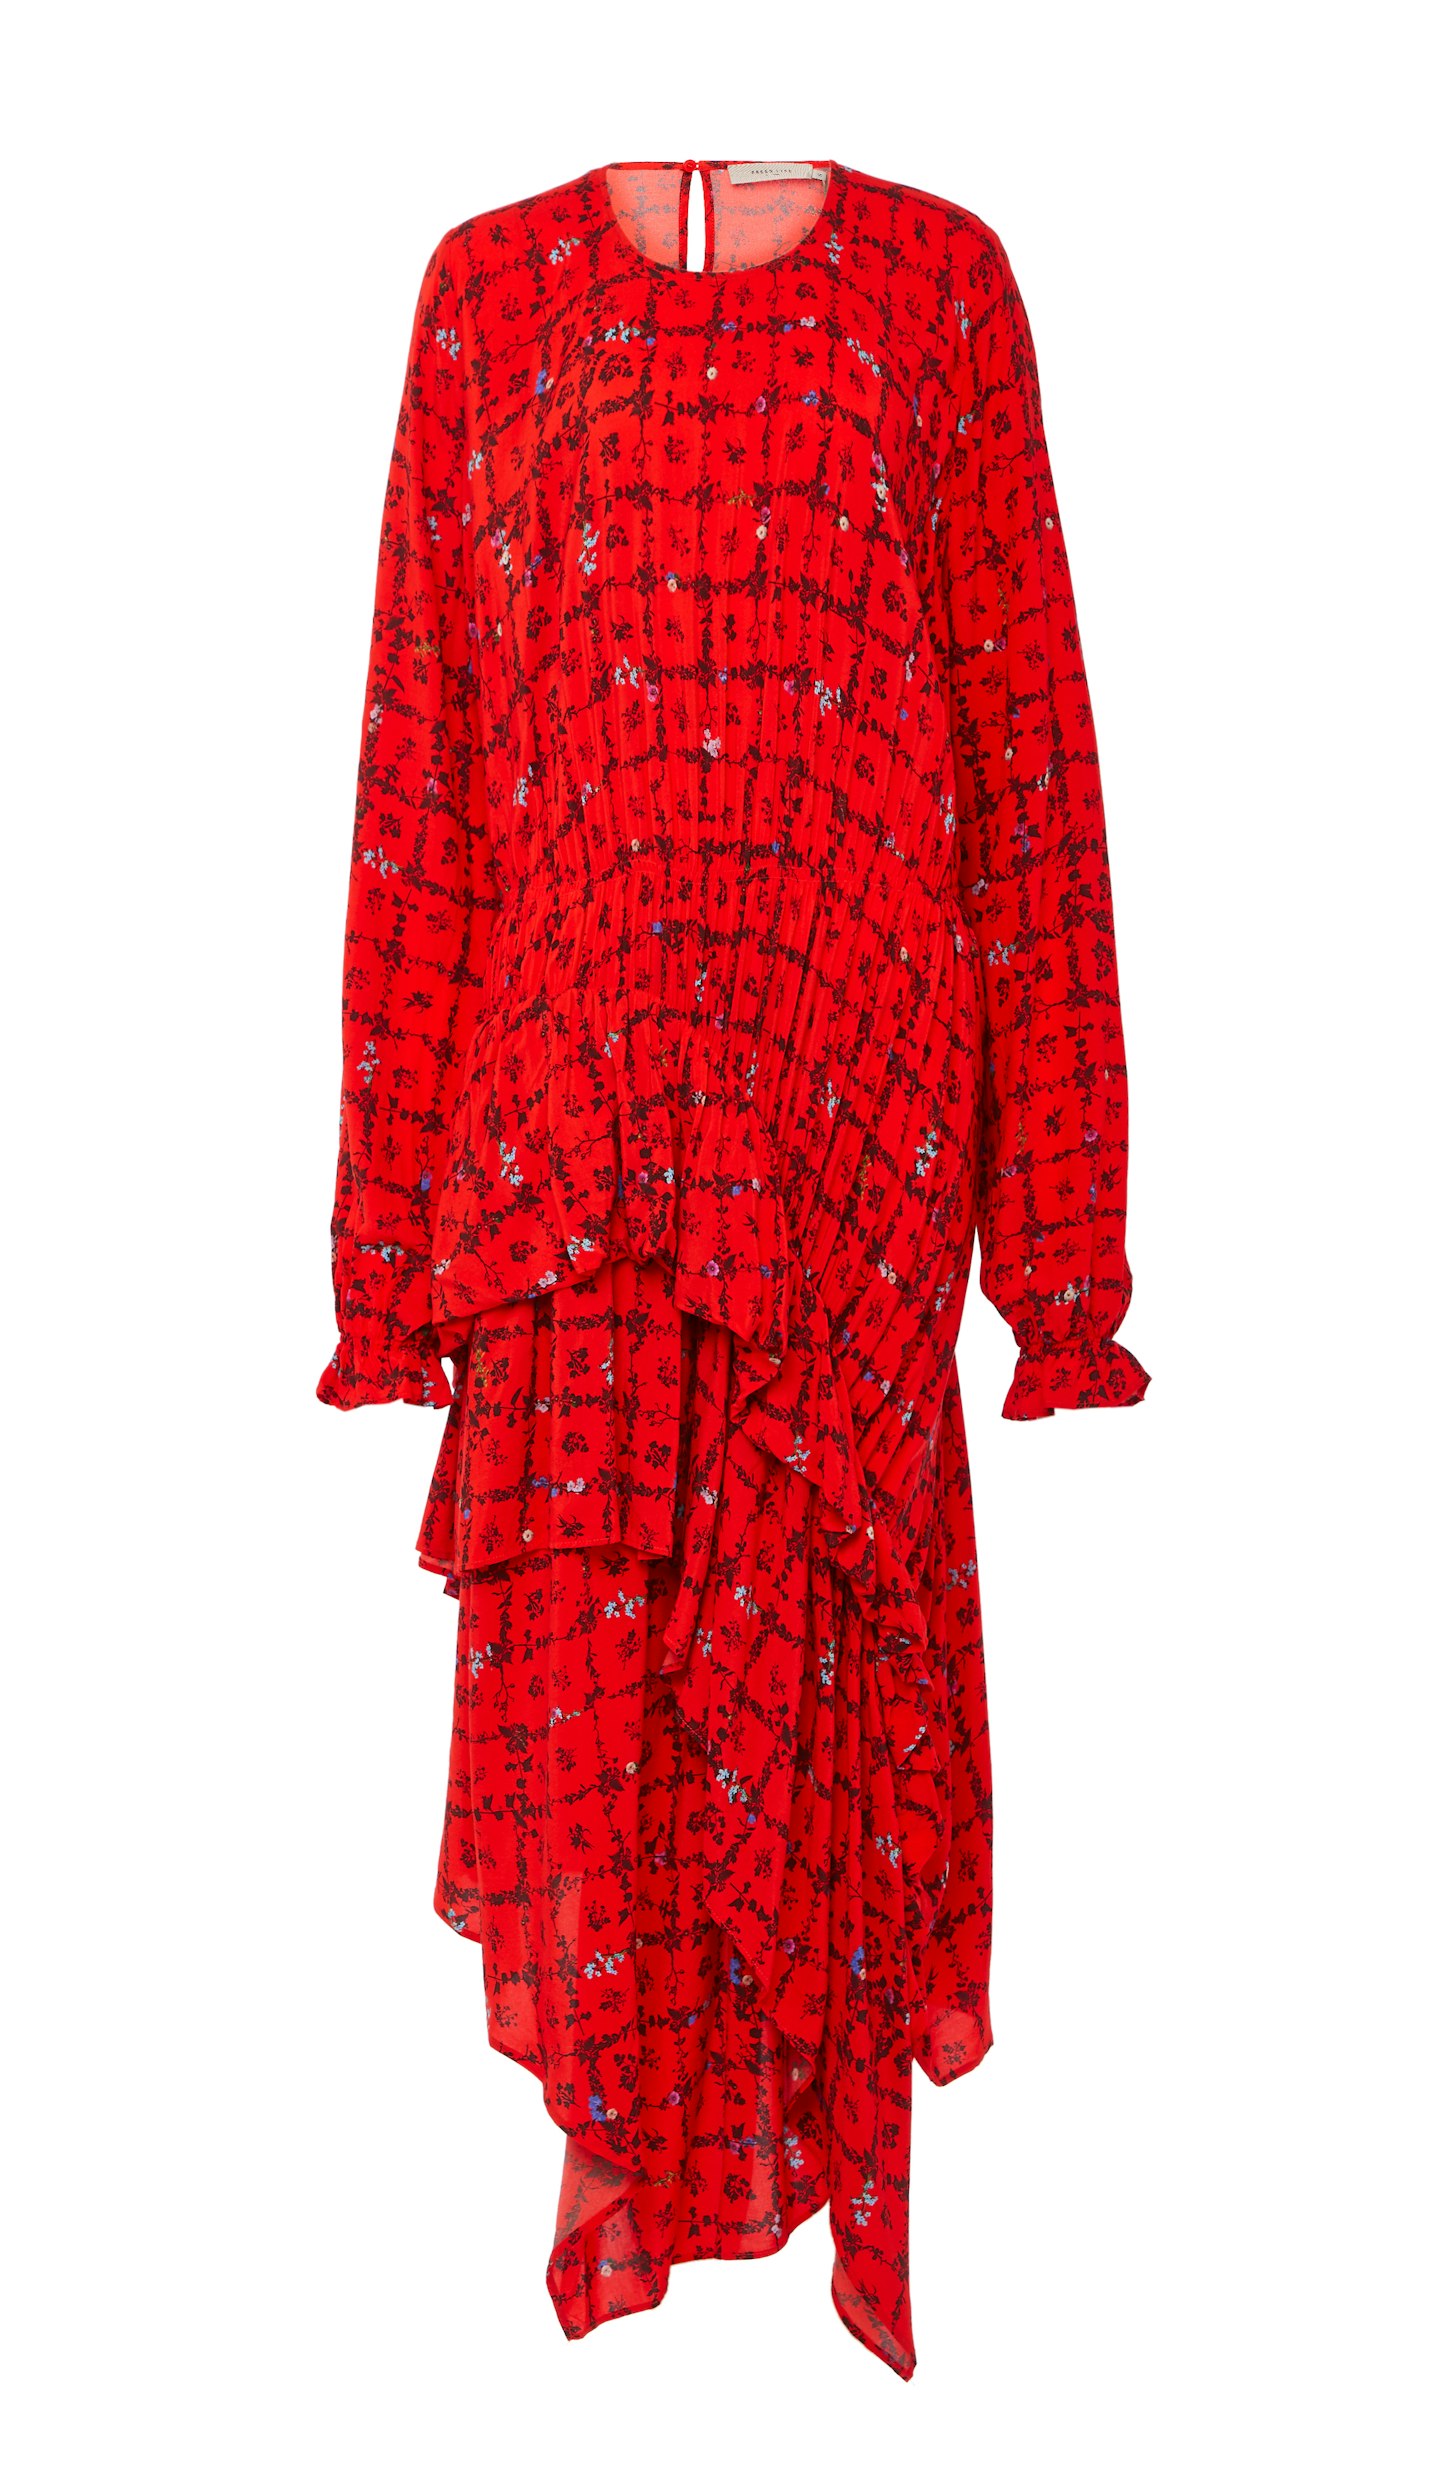 Preen Line, Amina Dress, £305 at Amazon